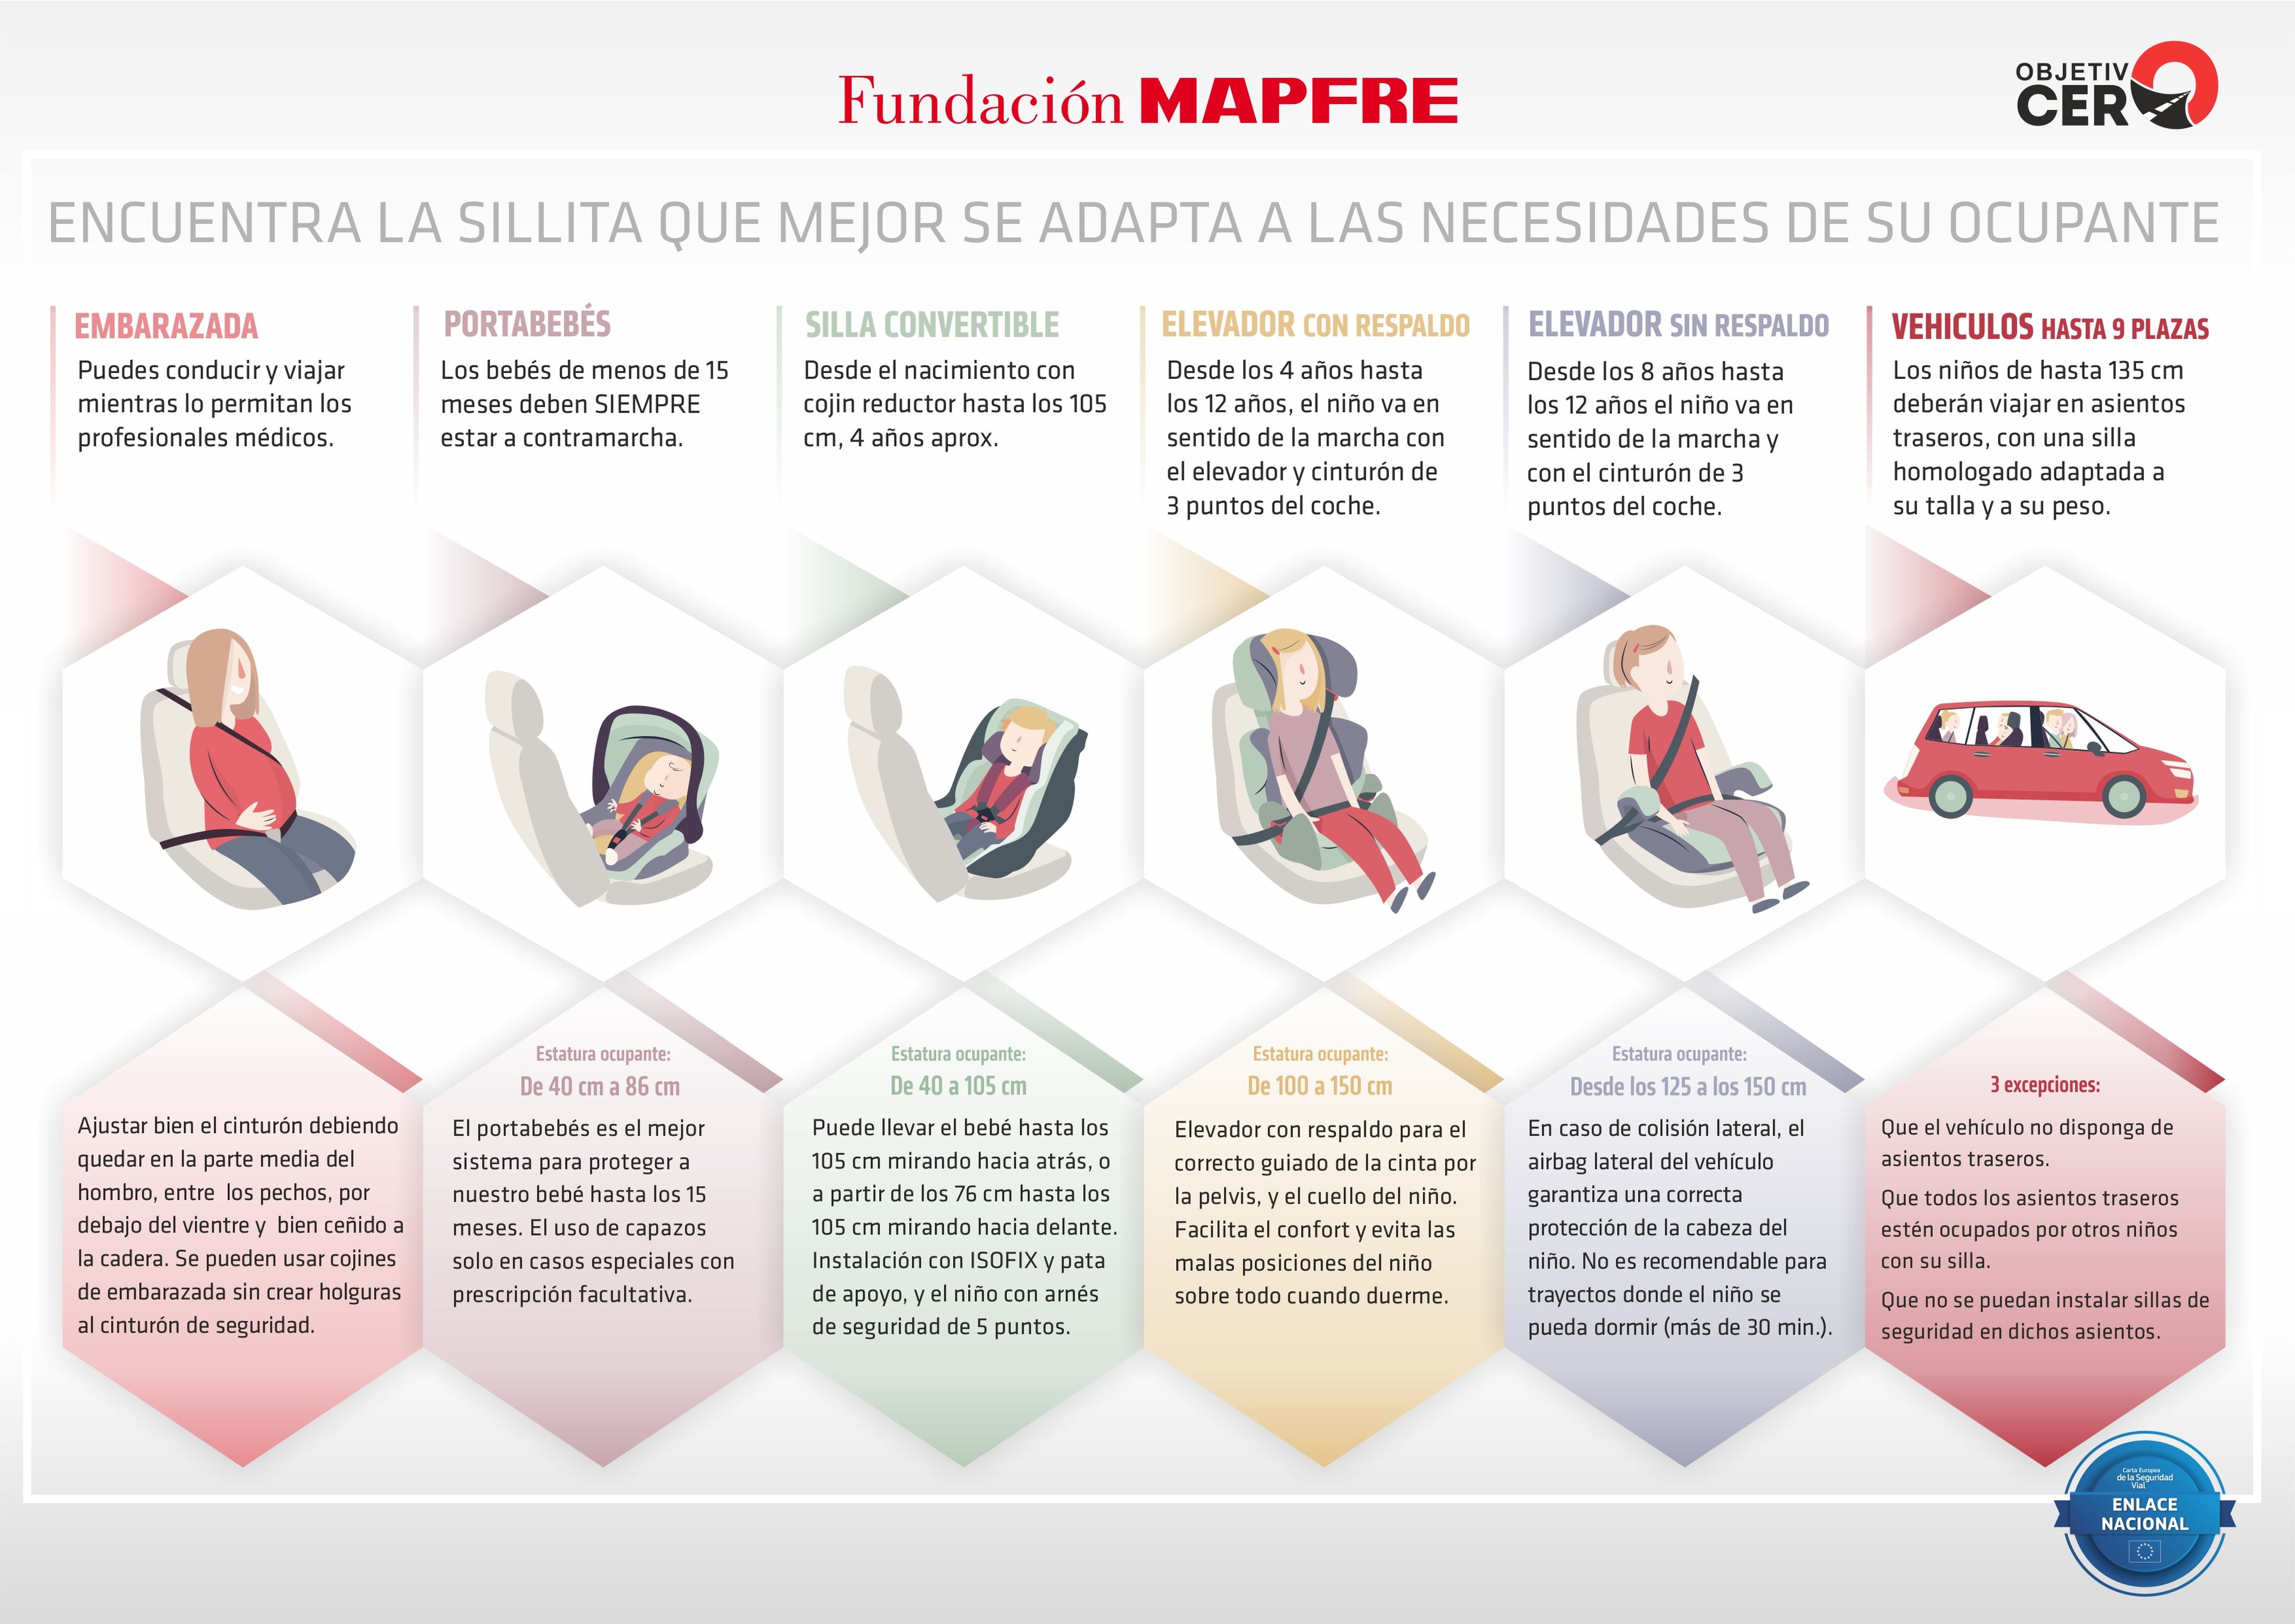 Cinturón de Seguridad en embarazadas - Fundación MAPFRE